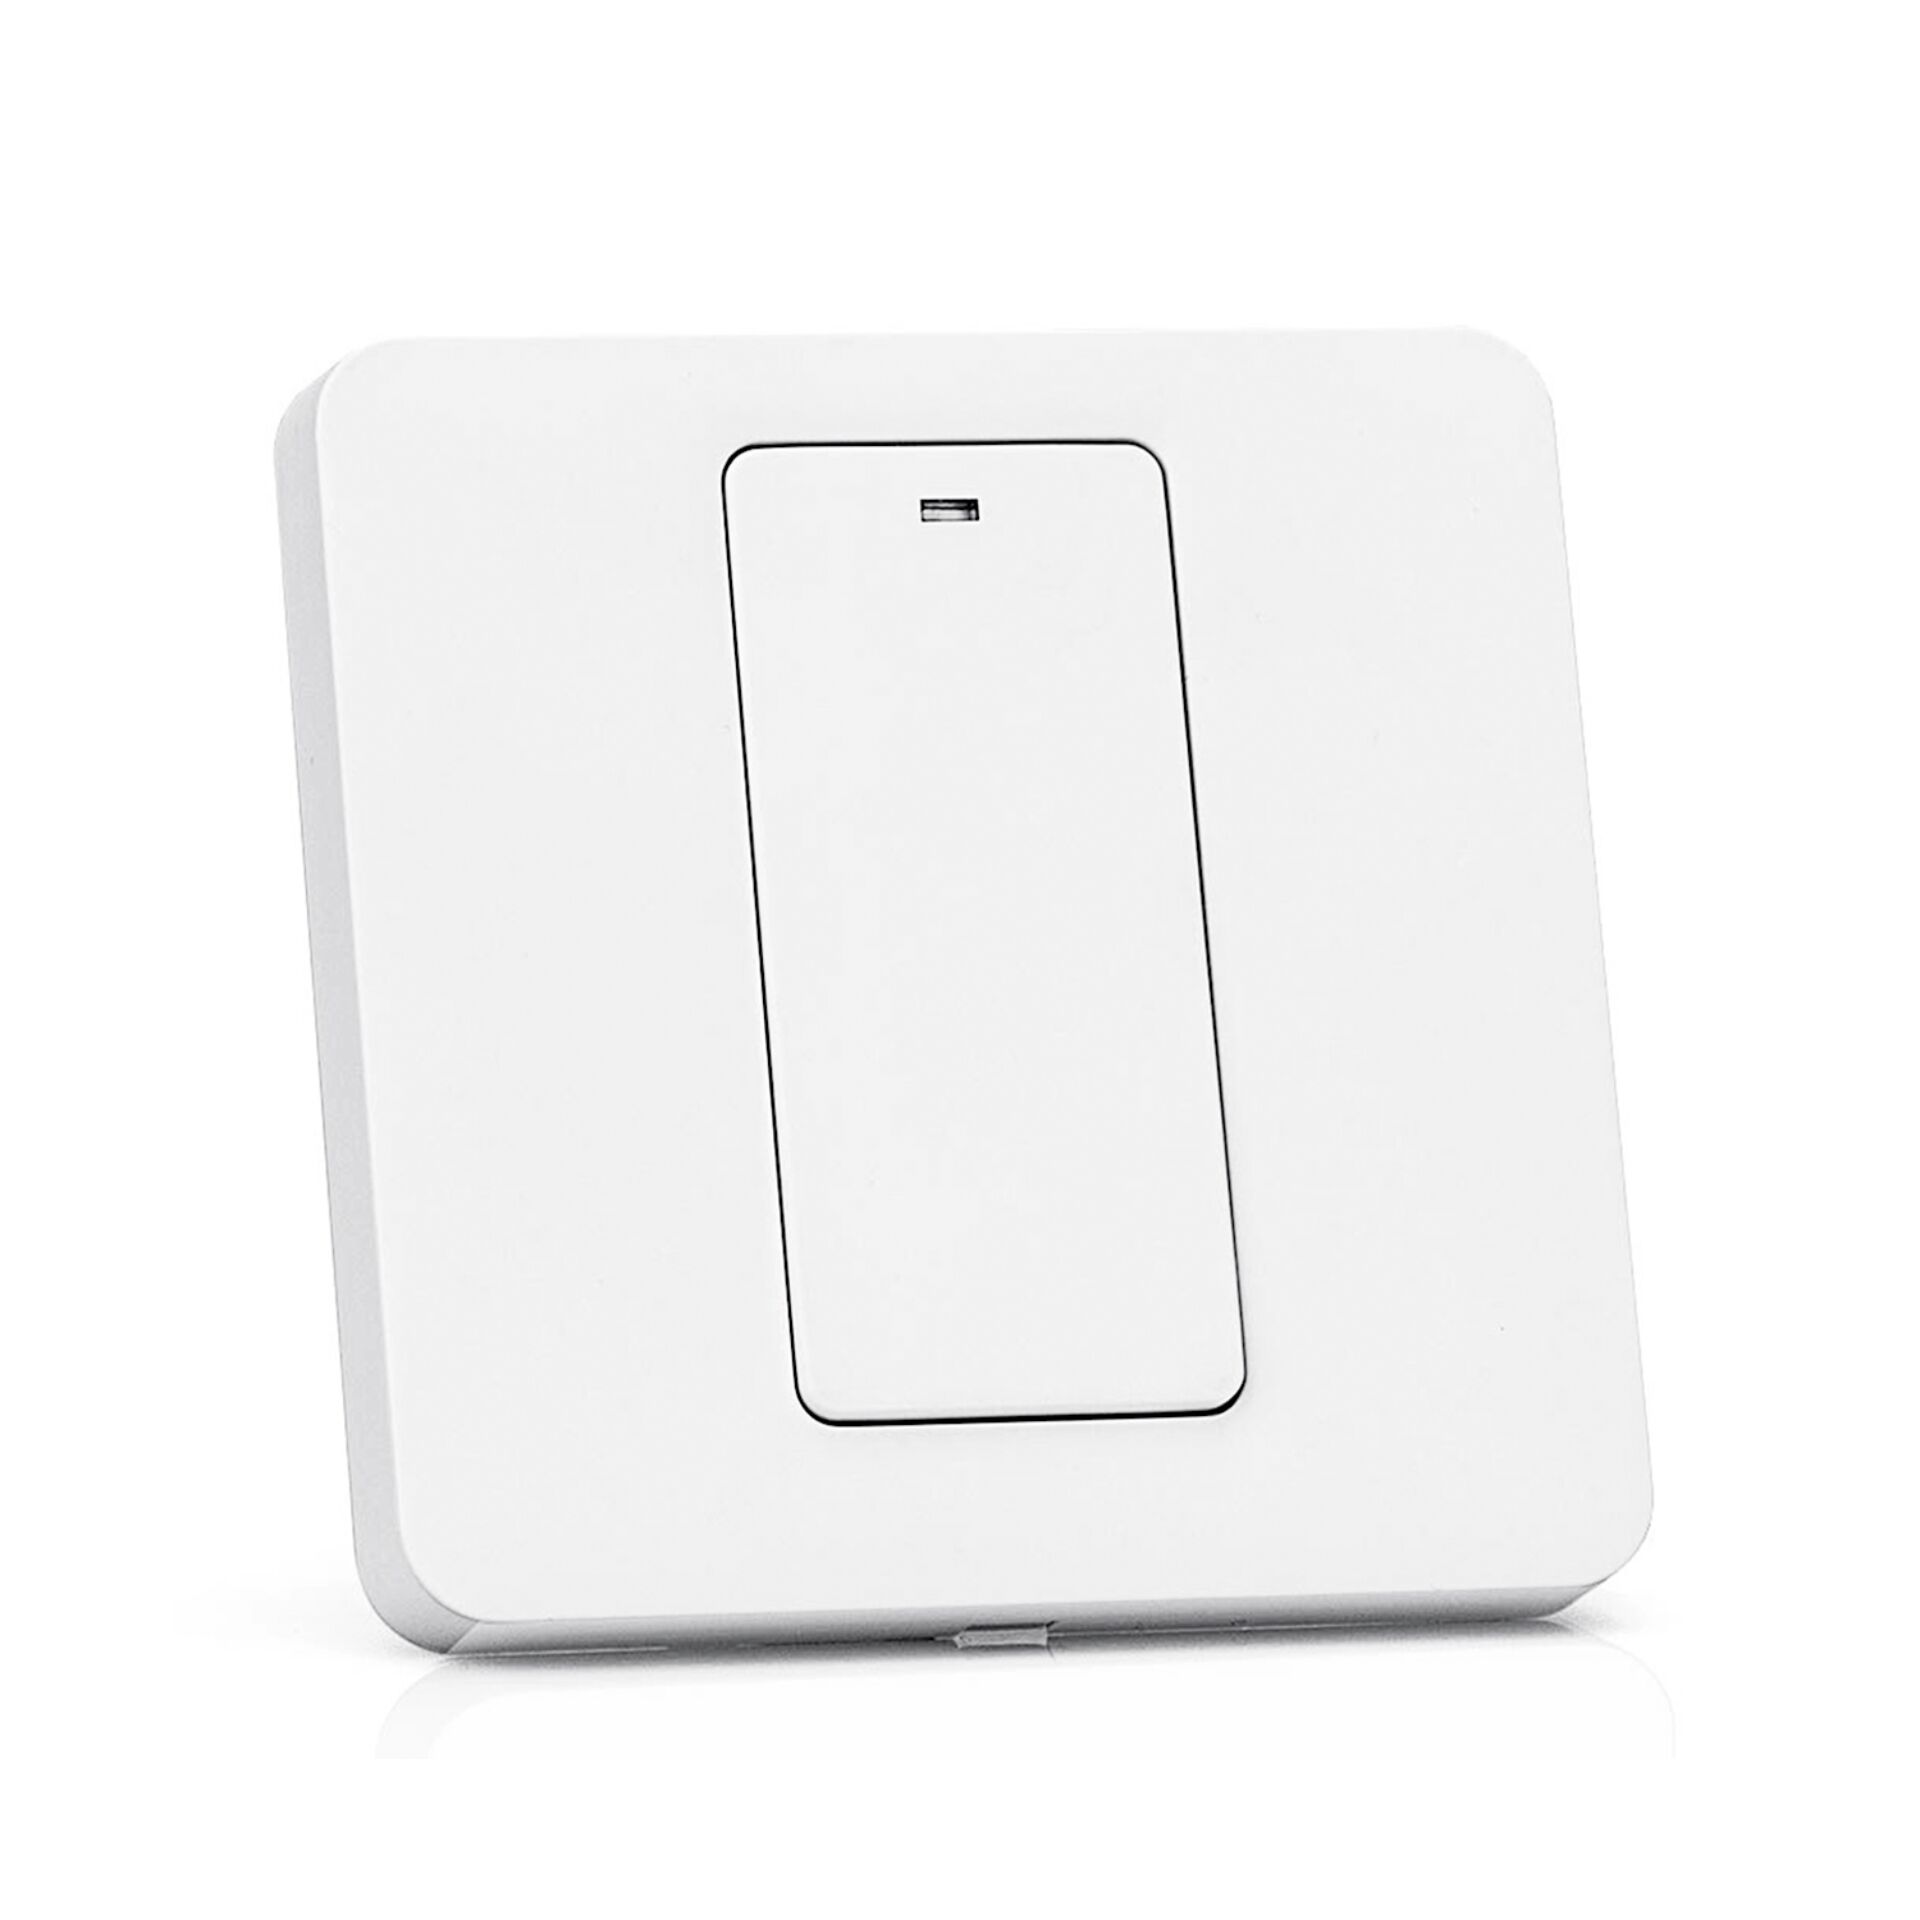 Meross MSS510X Smart Home Beleuchtungssteuerung Kabellos Weiß